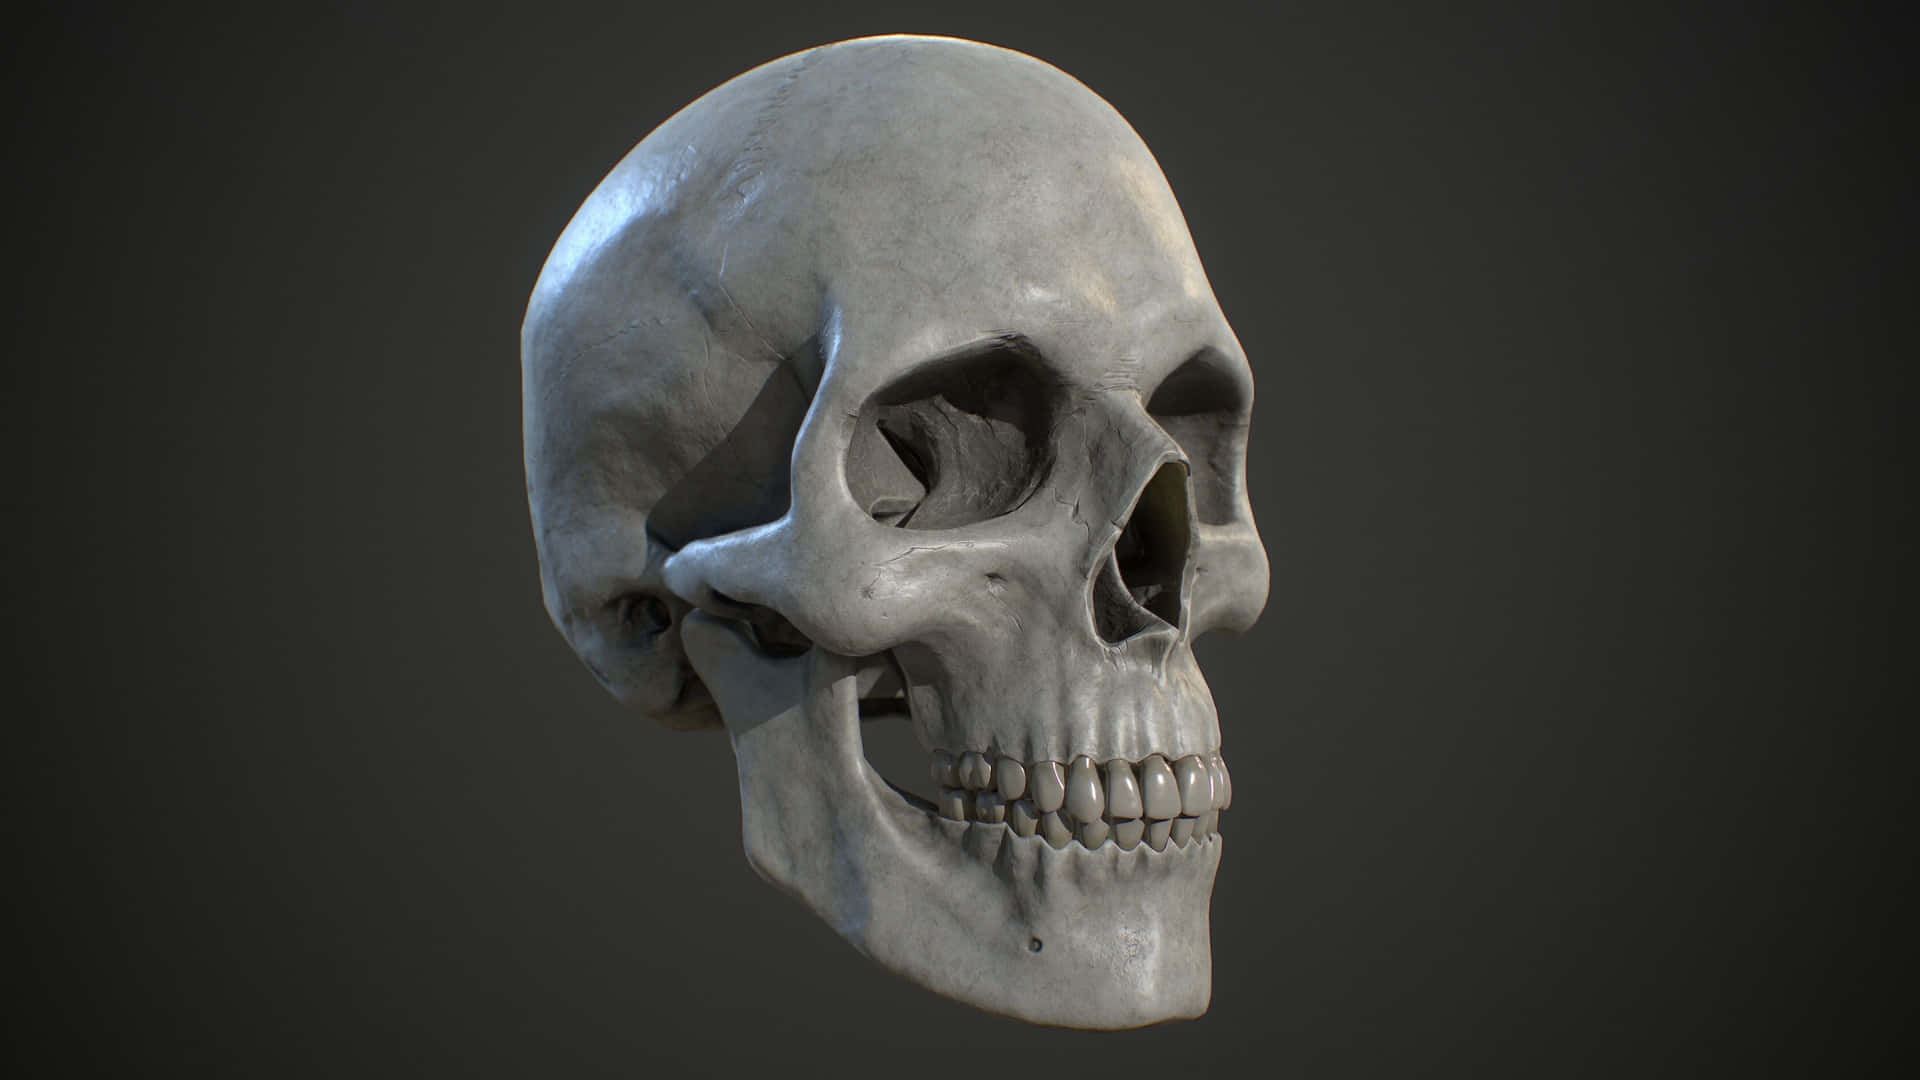 Mysterious 3D Skull on Dark Background Wallpaper